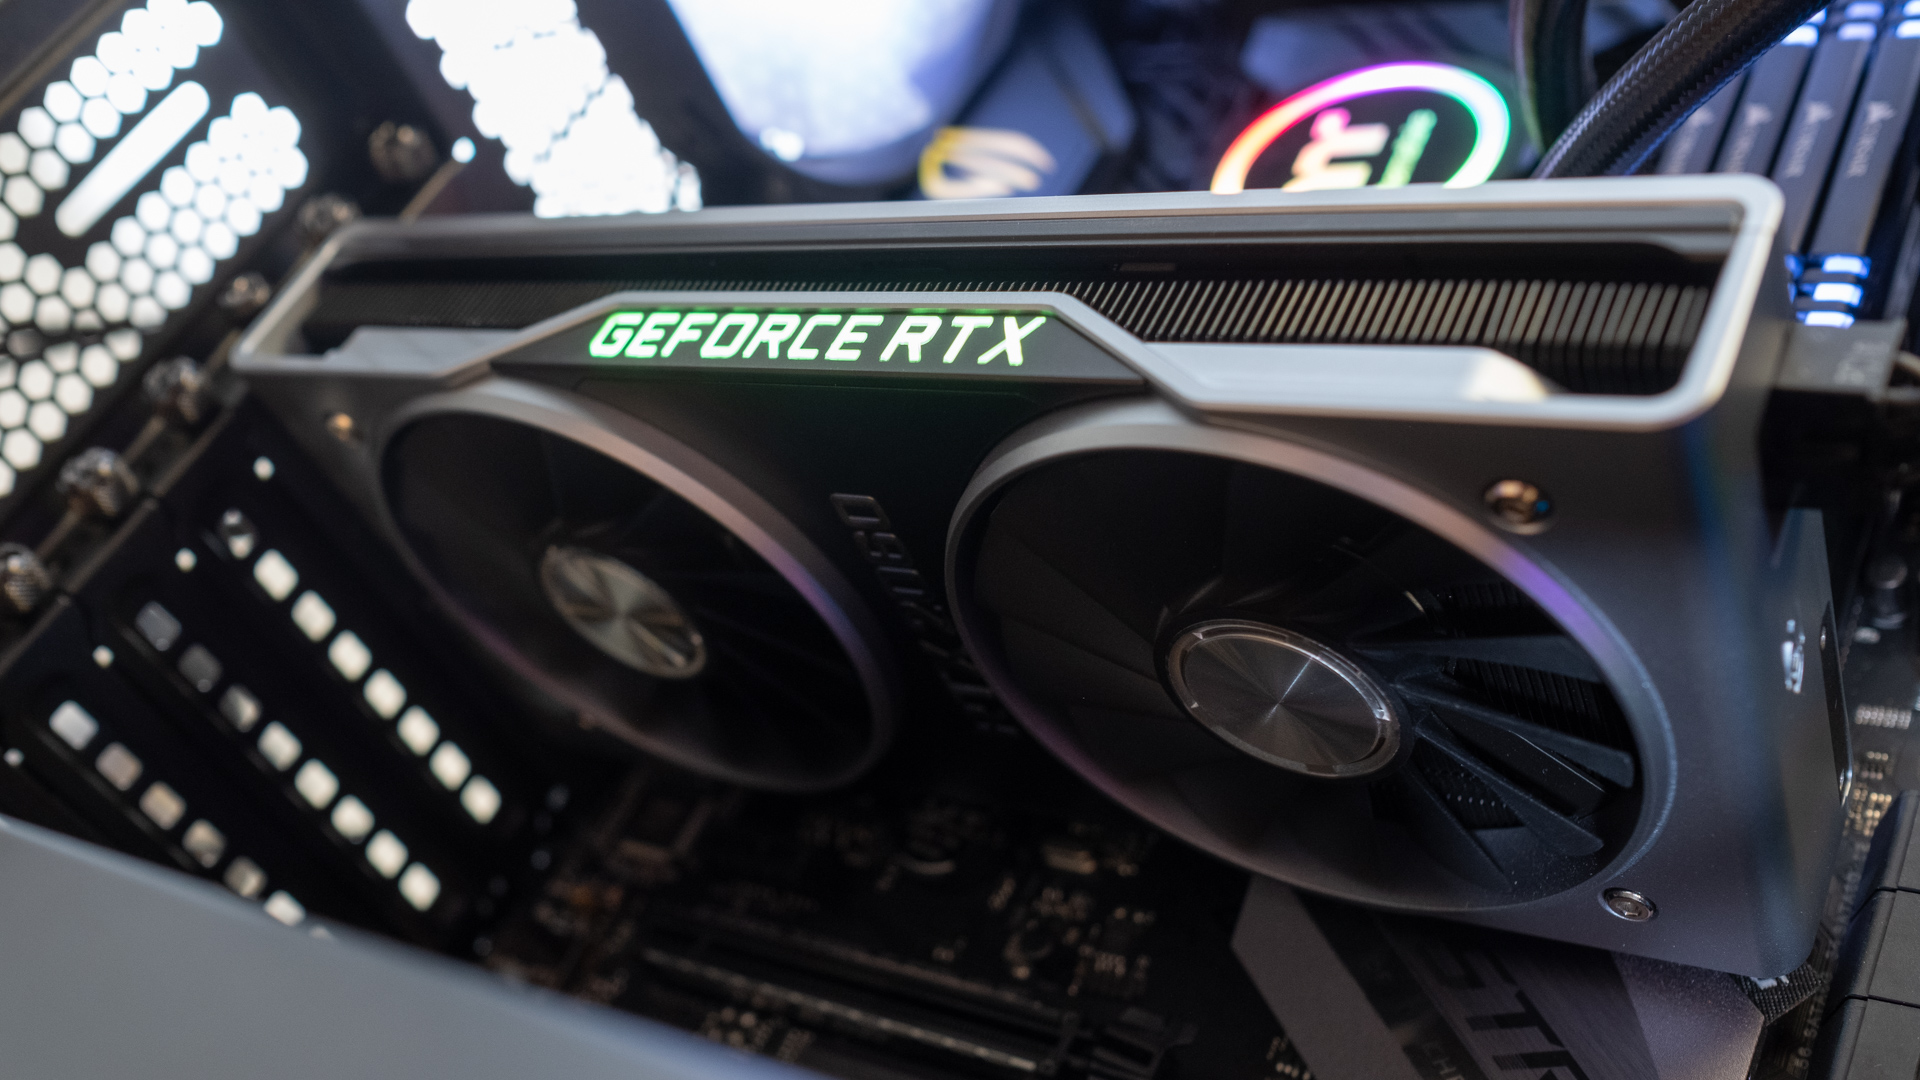 Gpu Rtx 2060 được cải tiến của Nvidia có thể nhanh hơn chúng tôi mong đợi